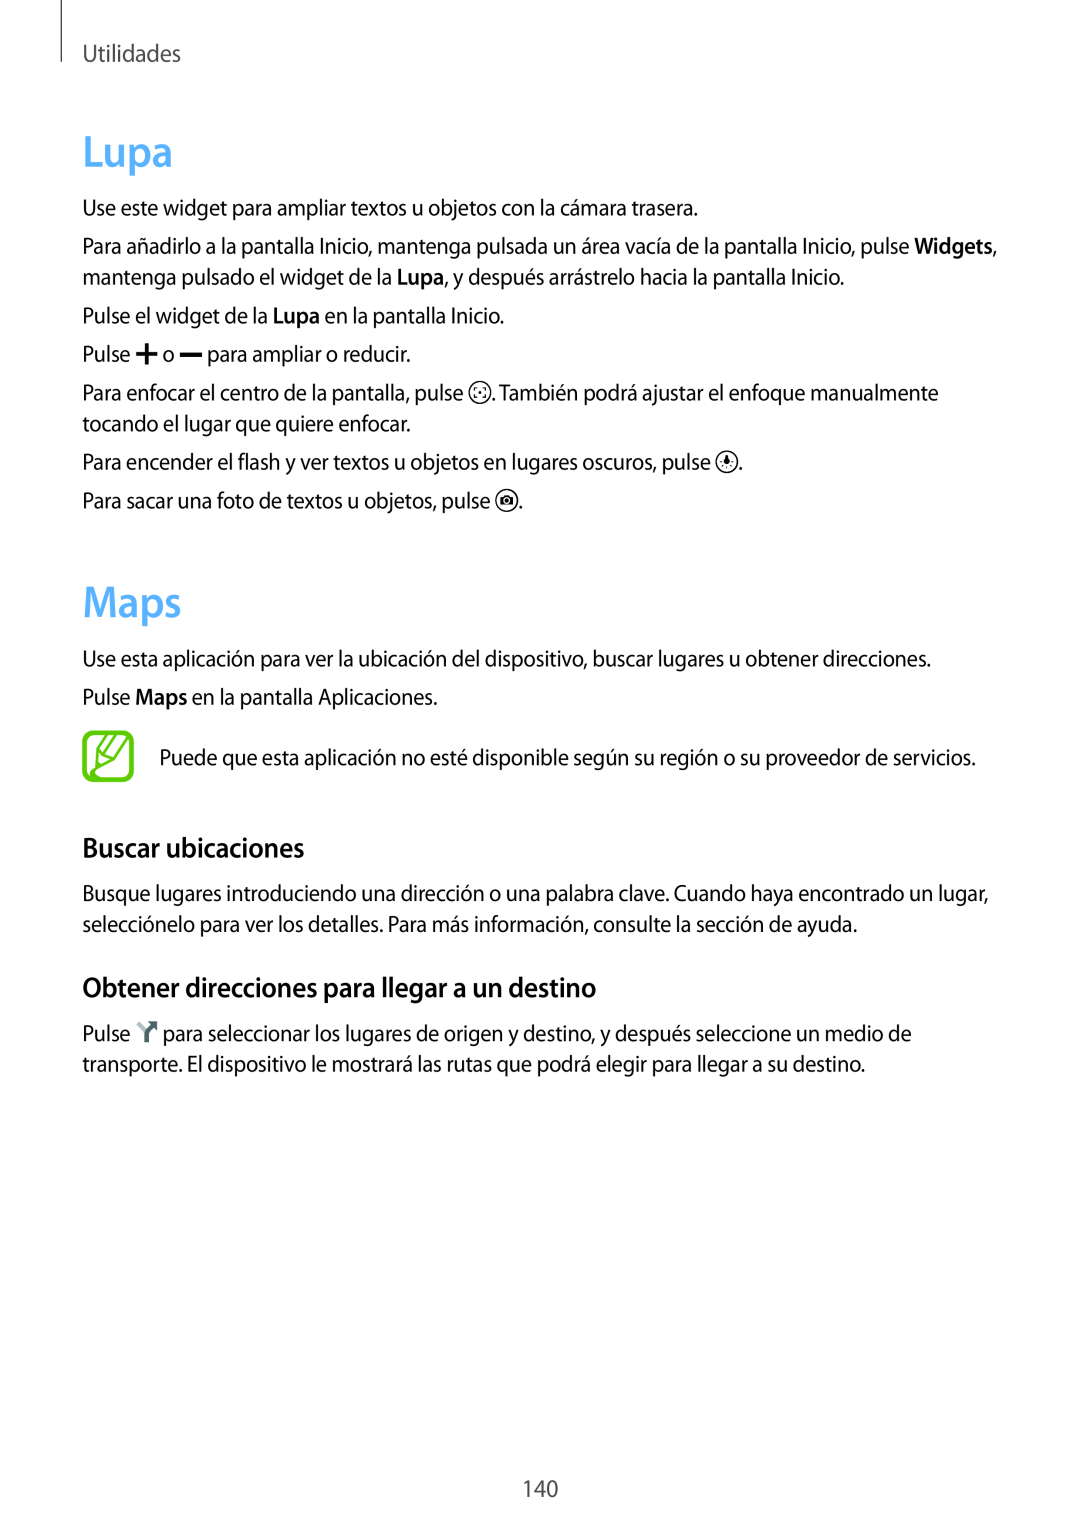 Samsung SM-G901FZBADTM manual Lupa, Maps, Buscar ubicaciones, Obtener direcciones para llegar a un destino, Utilidades 